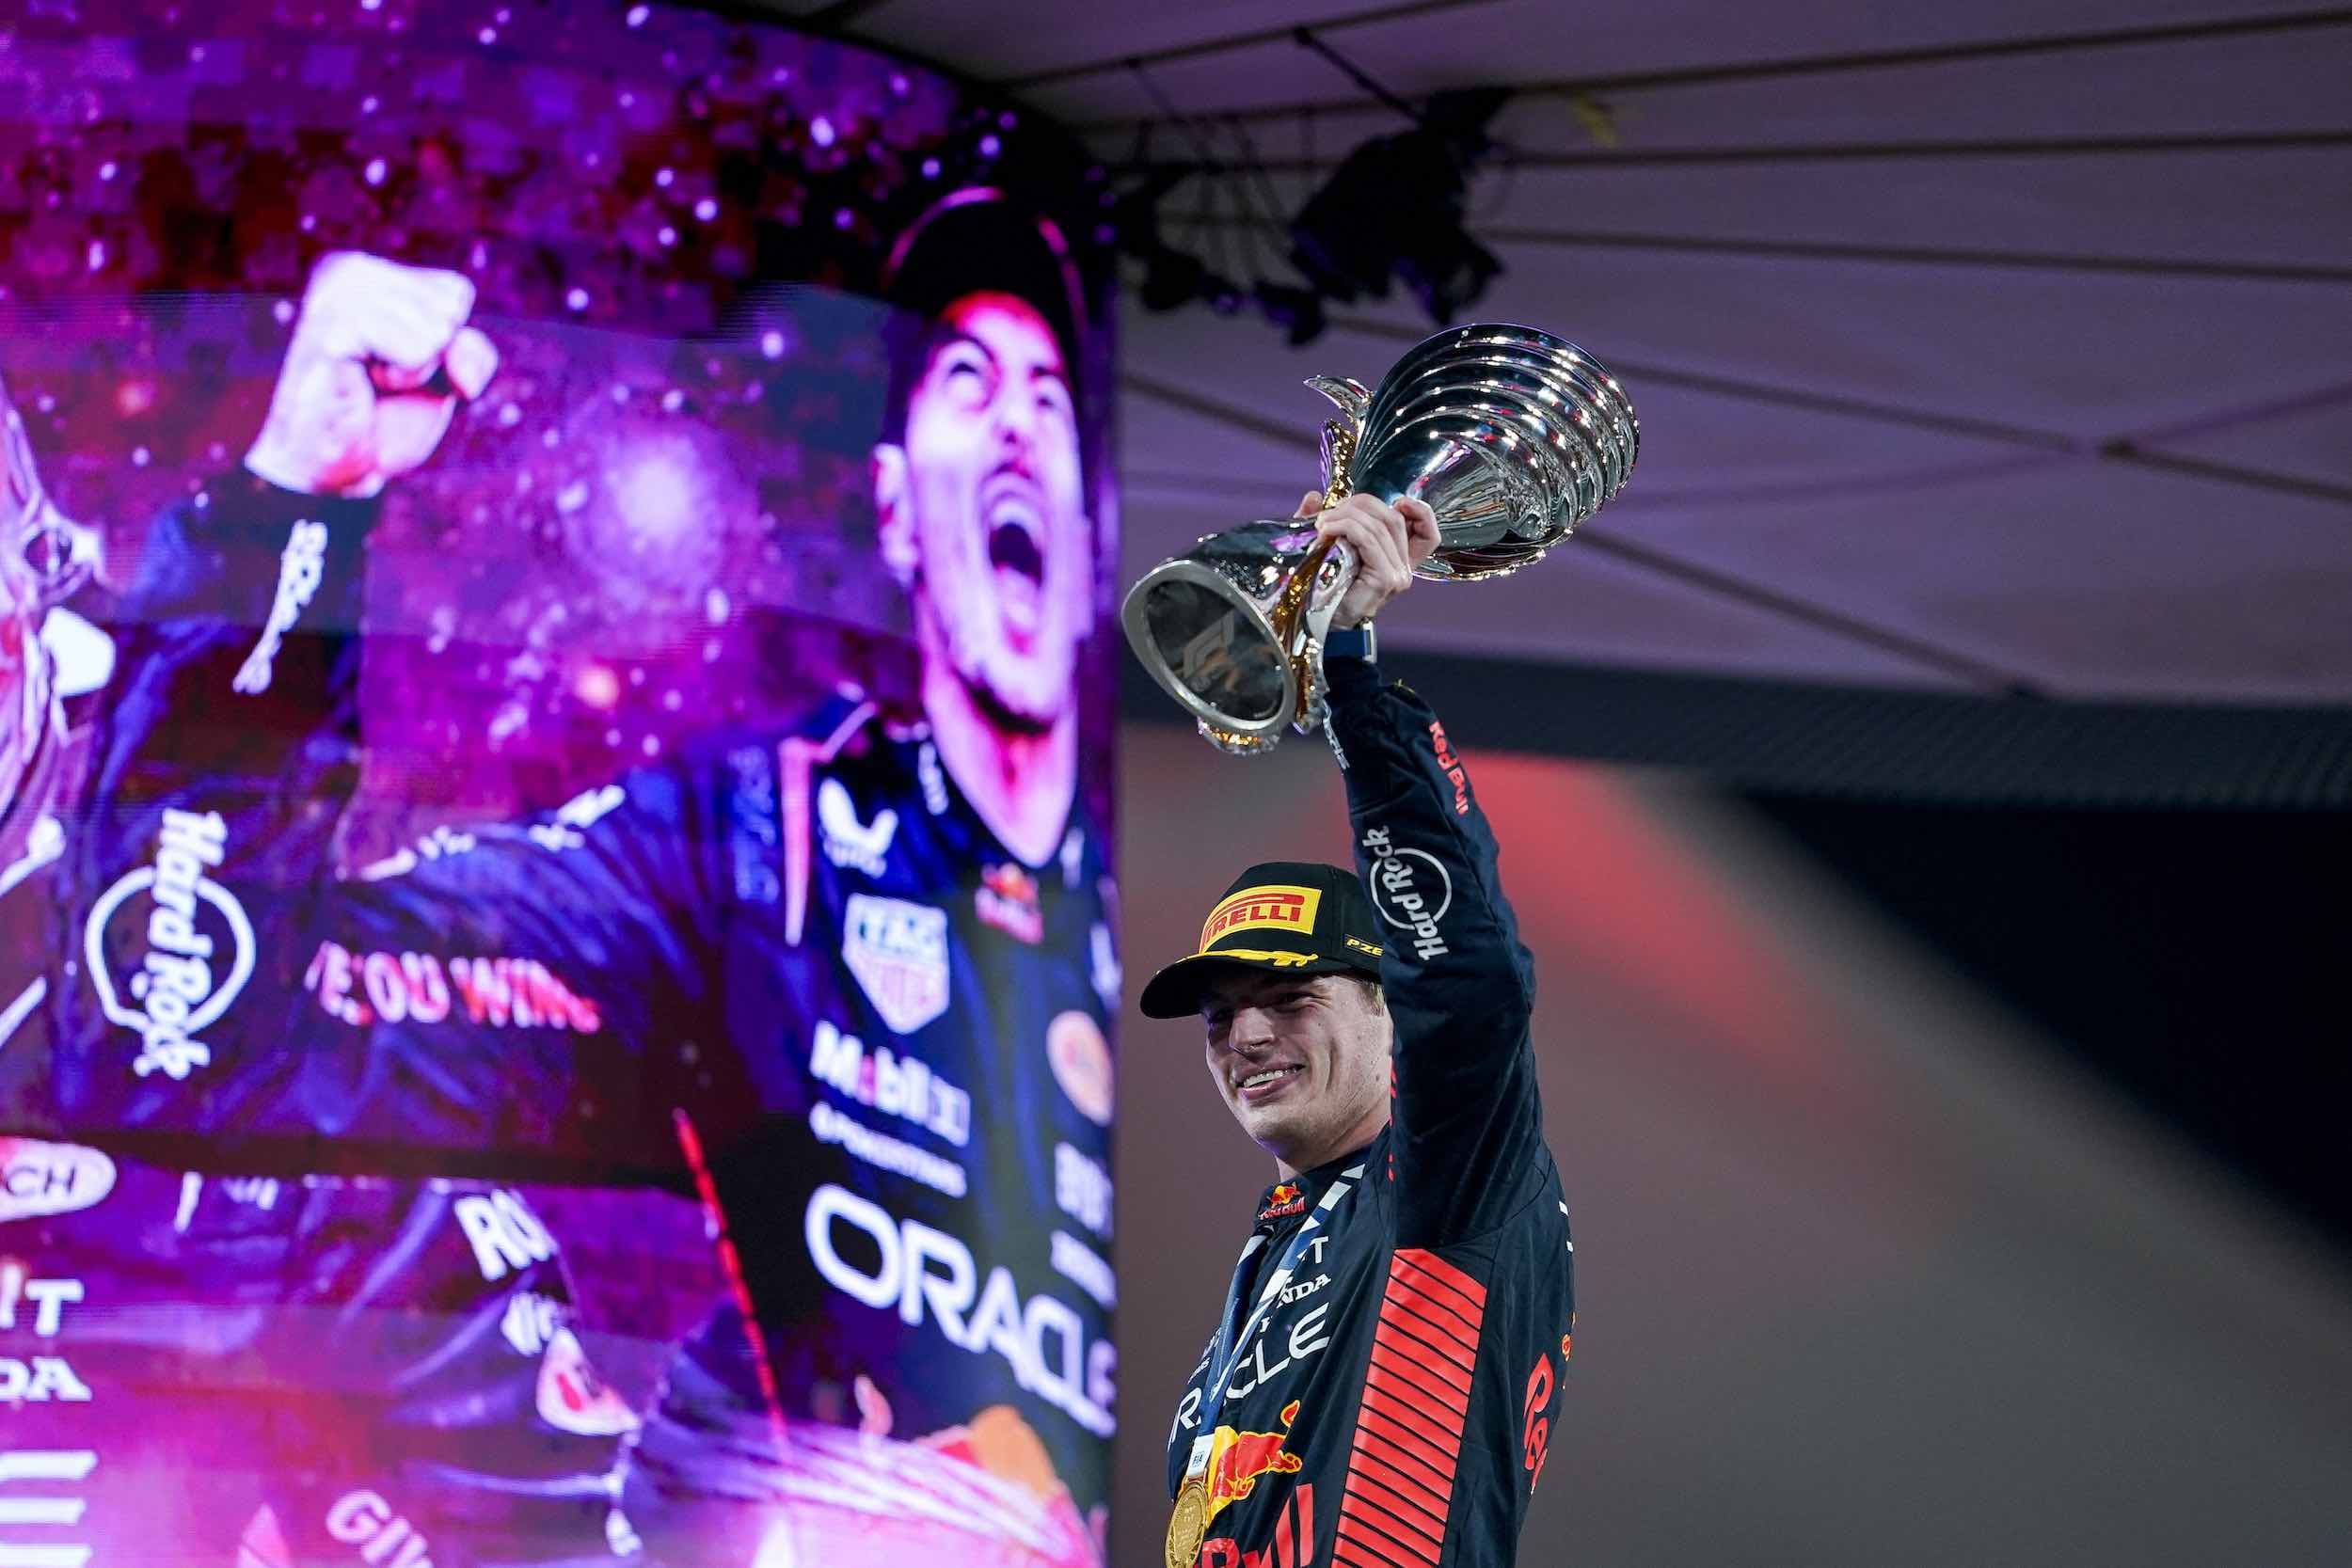 Die gleichen Herausforderungen und Ziele: Wie für Oracle Red Bull Racing mit Weltmeister Max Verstappen, soll es auch für Bora-Hansgrohe ganz nach oben gehen (Foto: IMAGO / ZUMA Wire)